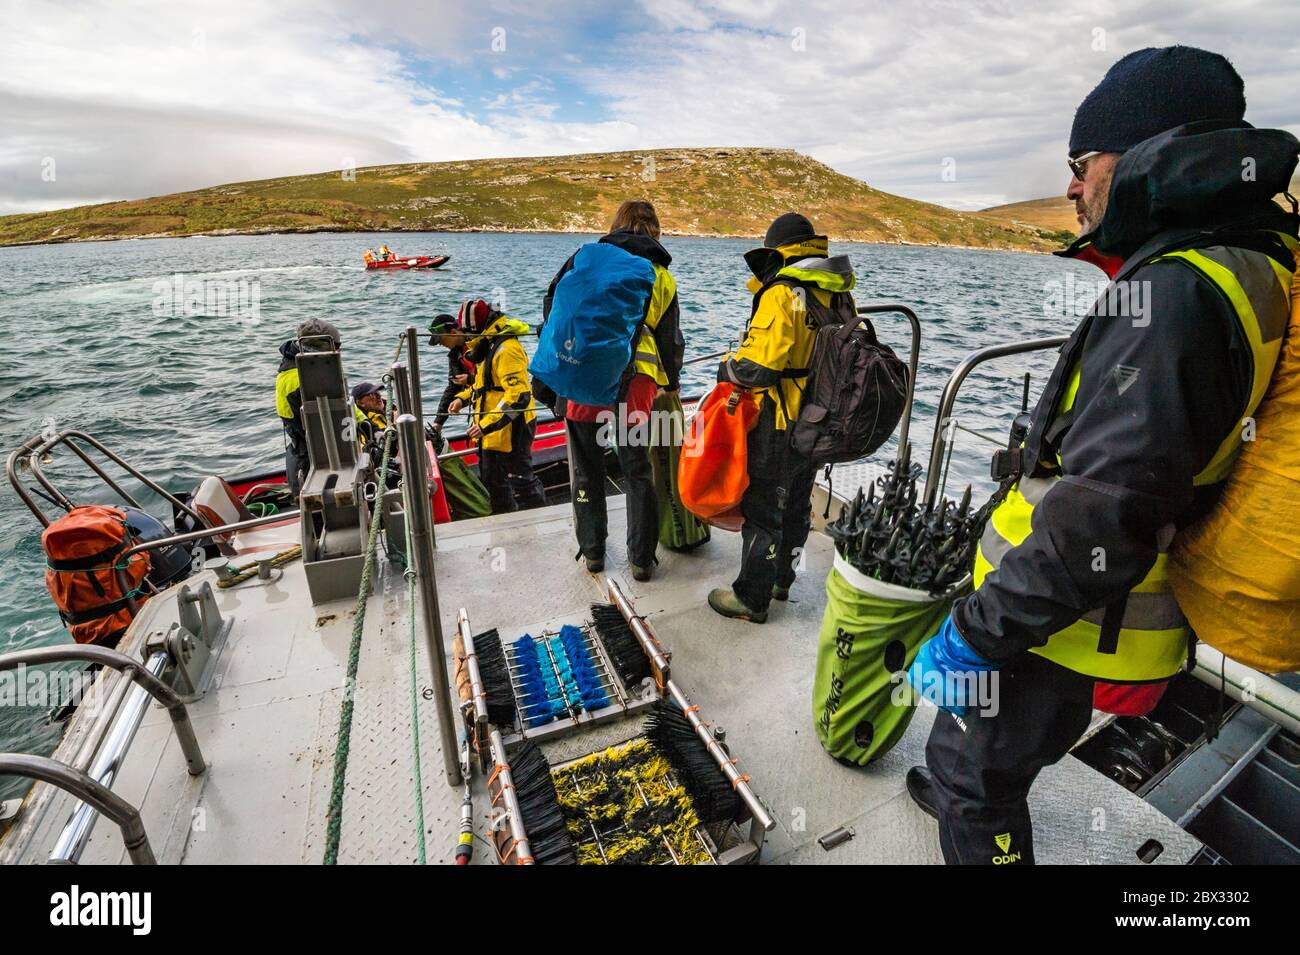 Îles Falkland, West point Island, l'équipe scientifique envoie des marqueurs de sentier pour éviter de perturber la faune locale et protéger la flore la plus fragile, avant la visite des voyageurs Banque D'Images